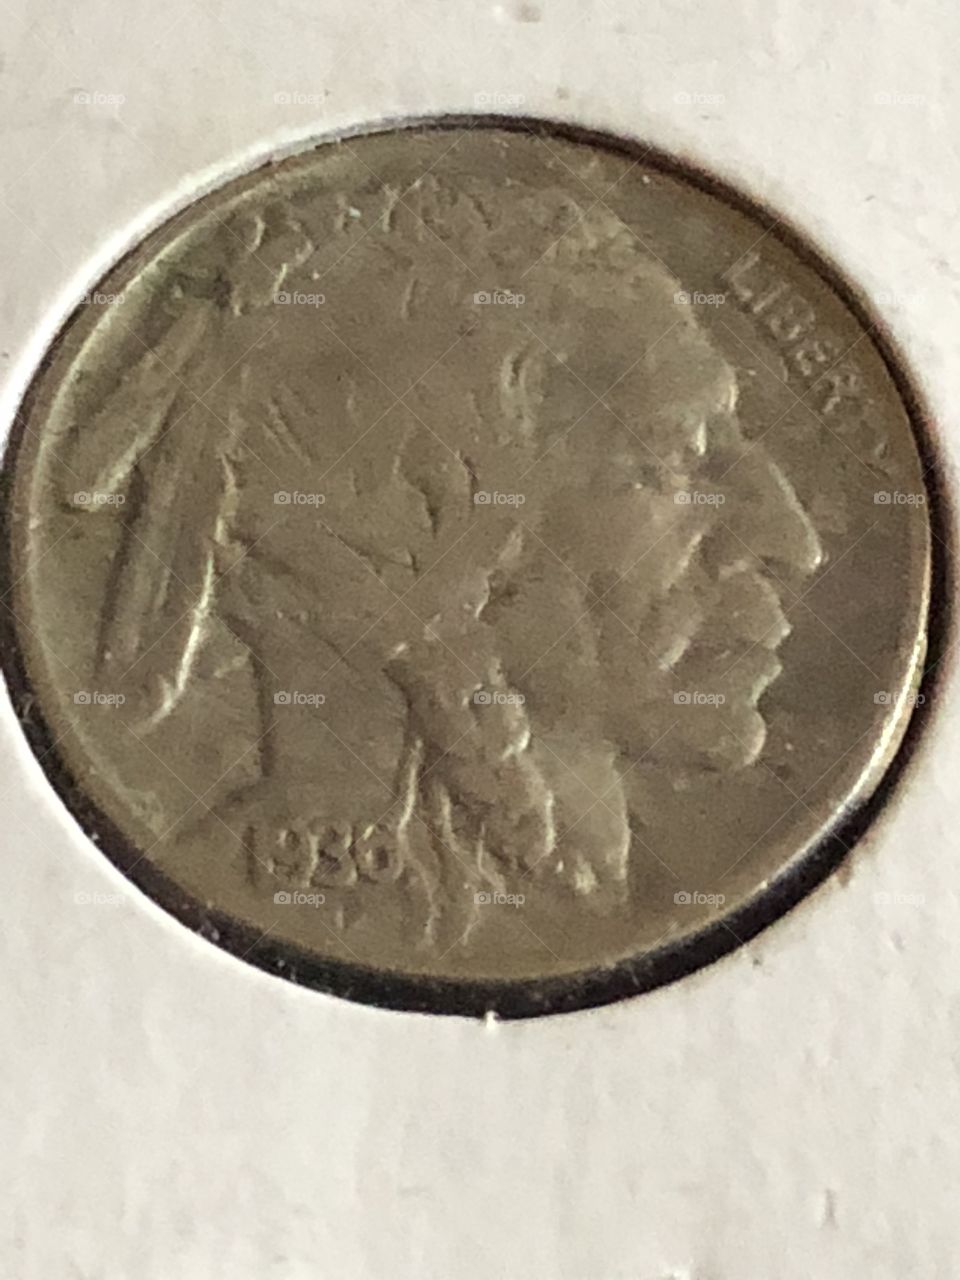 1938 buffalo nickel